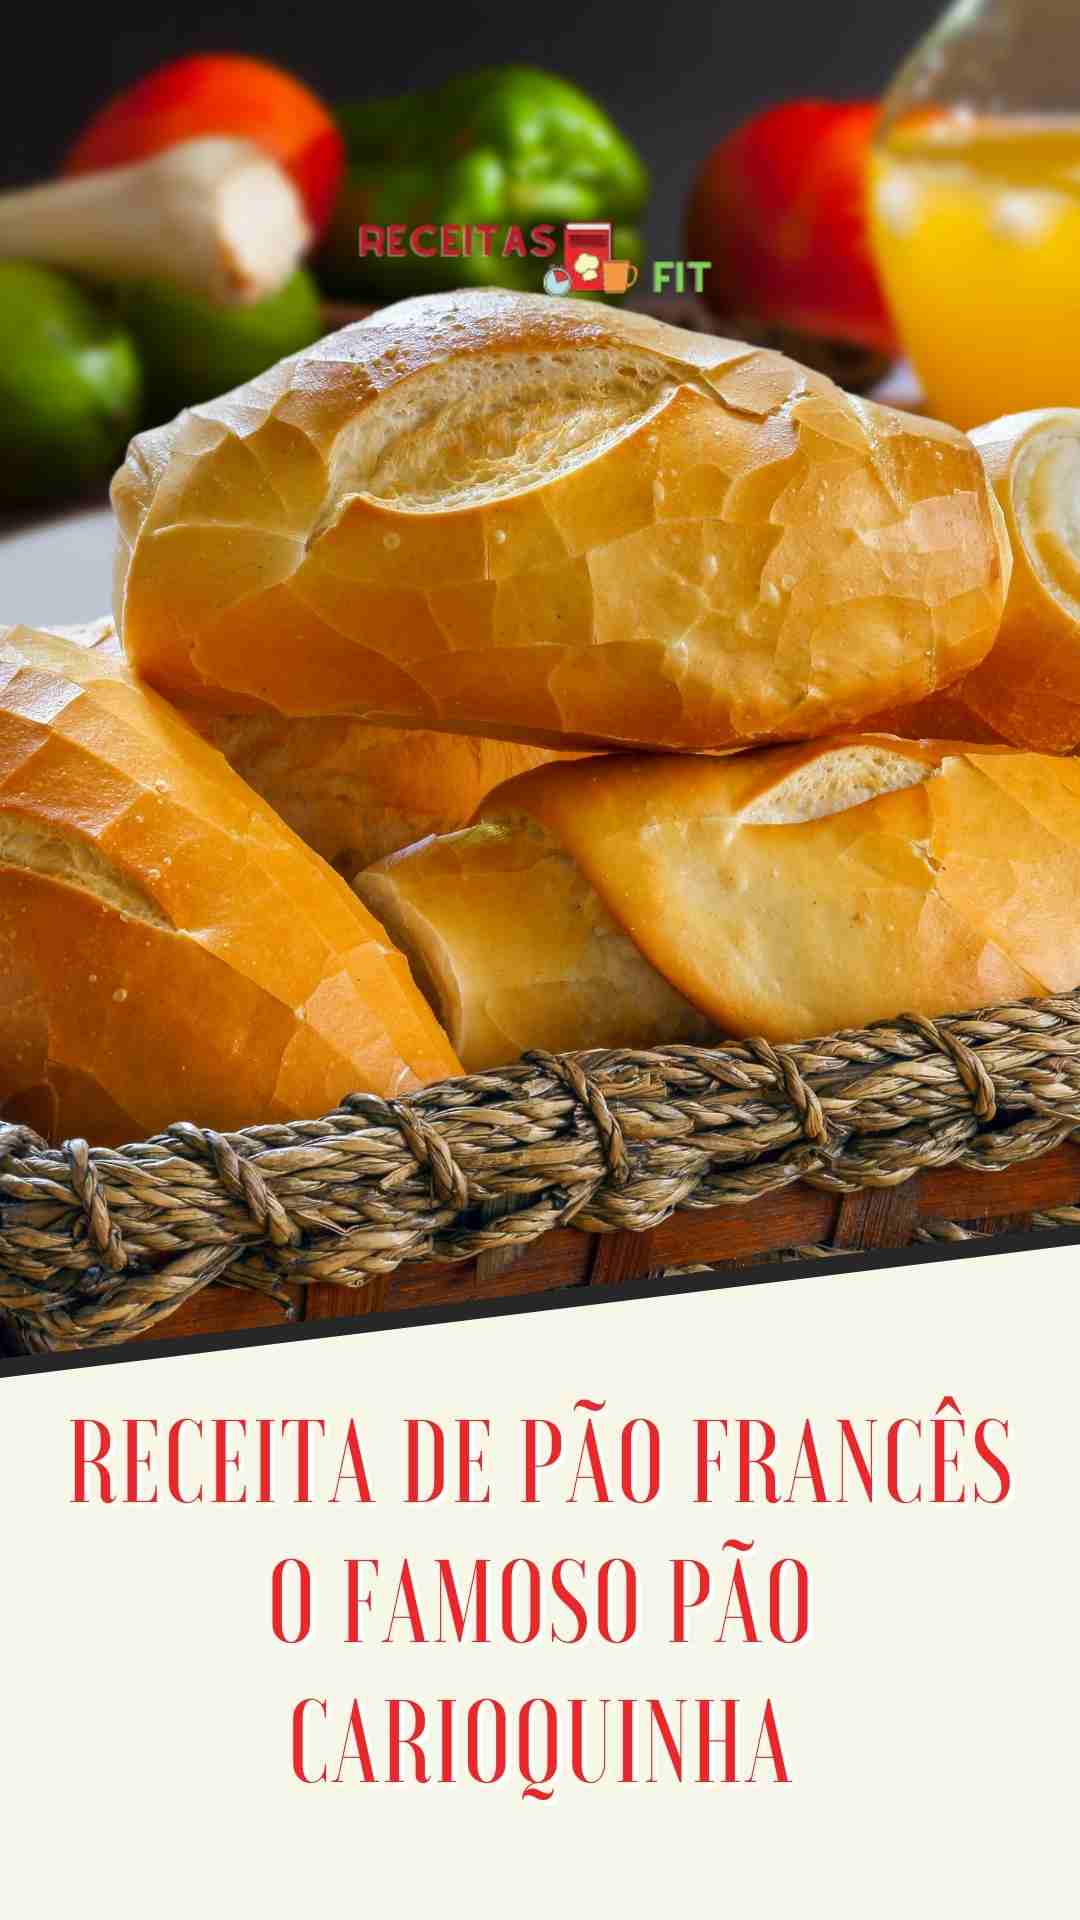 You are currently viewing Receita de pao frances – O famoso pão carioquinha